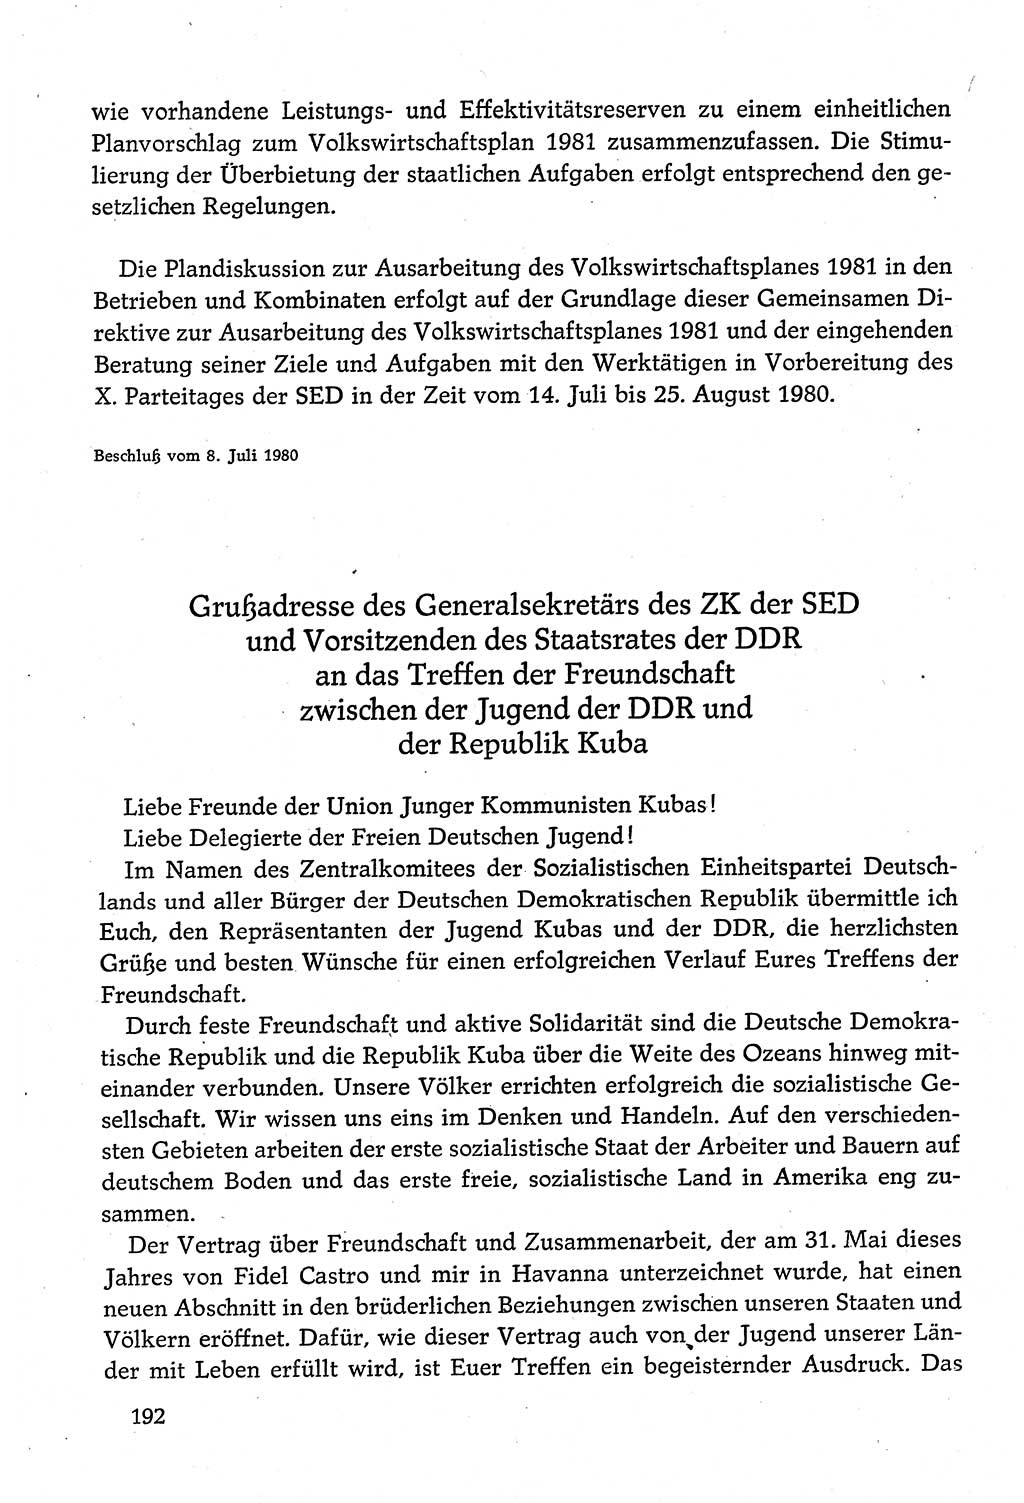 Dokumente der Sozialistischen Einheitspartei Deutschlands (SED) [Deutsche Demokratische Republik (DDR)] 1980-1981, Seite 192 (Dok. SED DDR 1980-1981, S. 192)